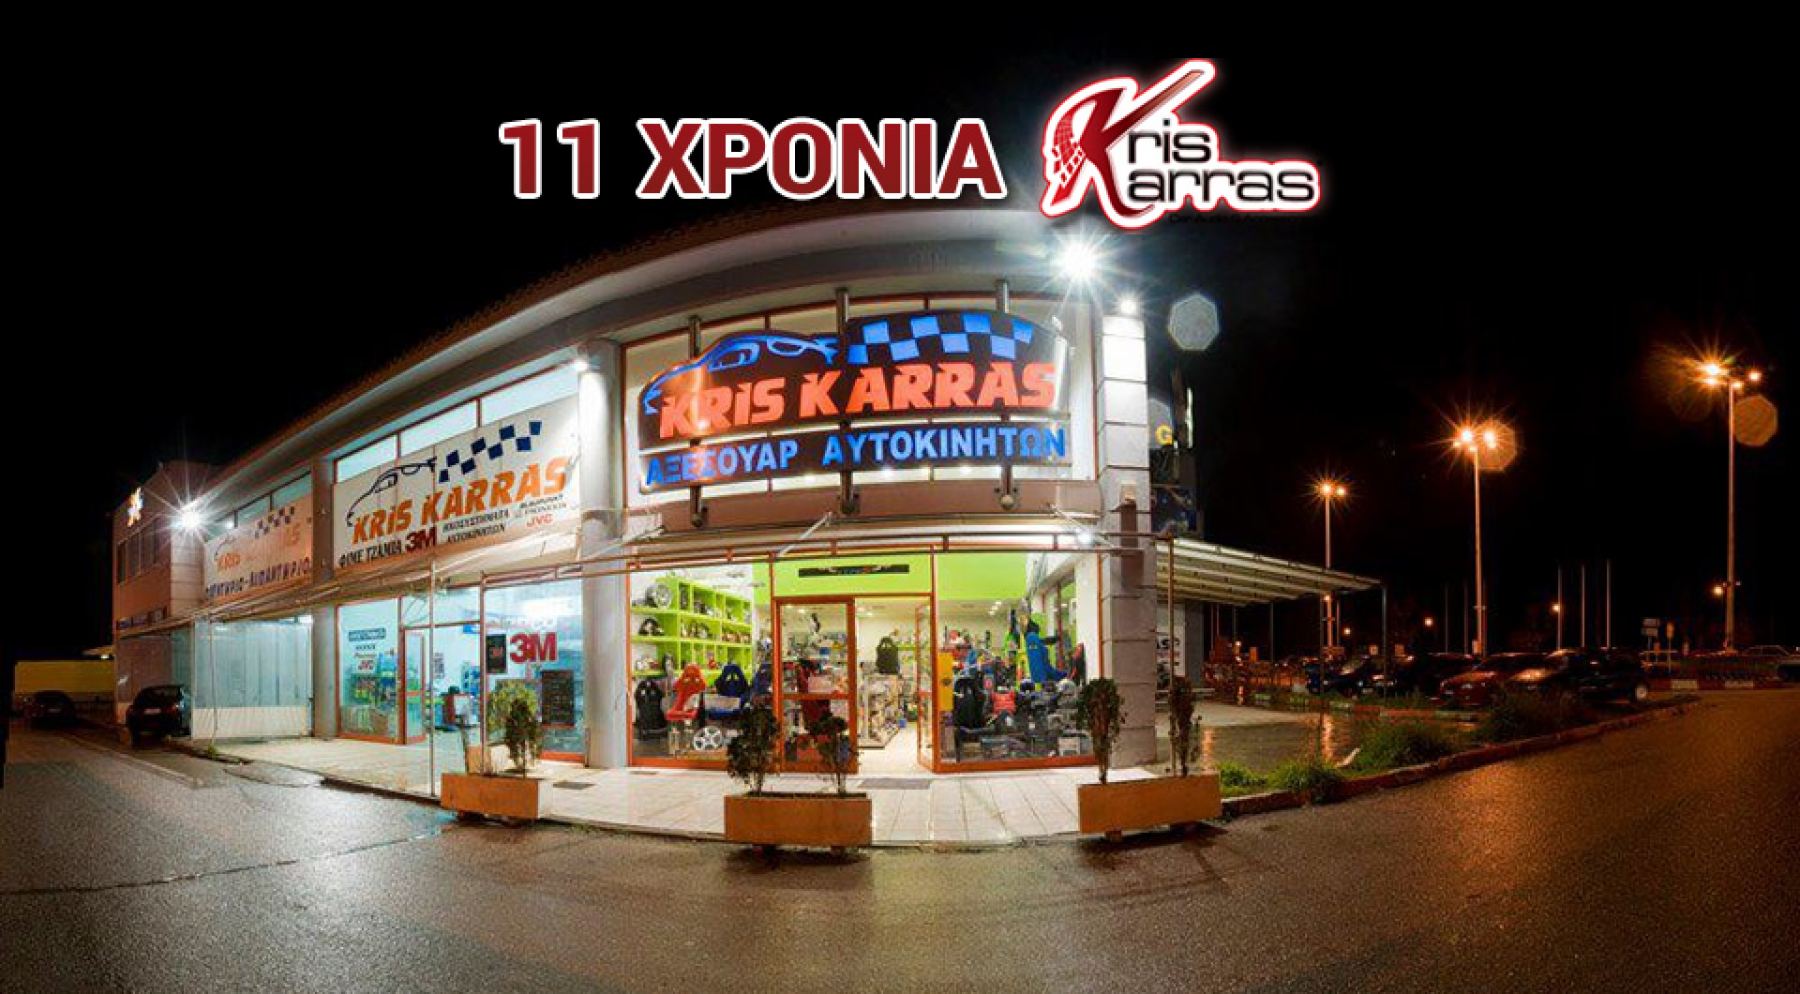 Σήμερα: Γιορτάζουμε τα 11 χρόνια kris-karras και σας κάνουμε 1+1 ΔΩΡΟ!